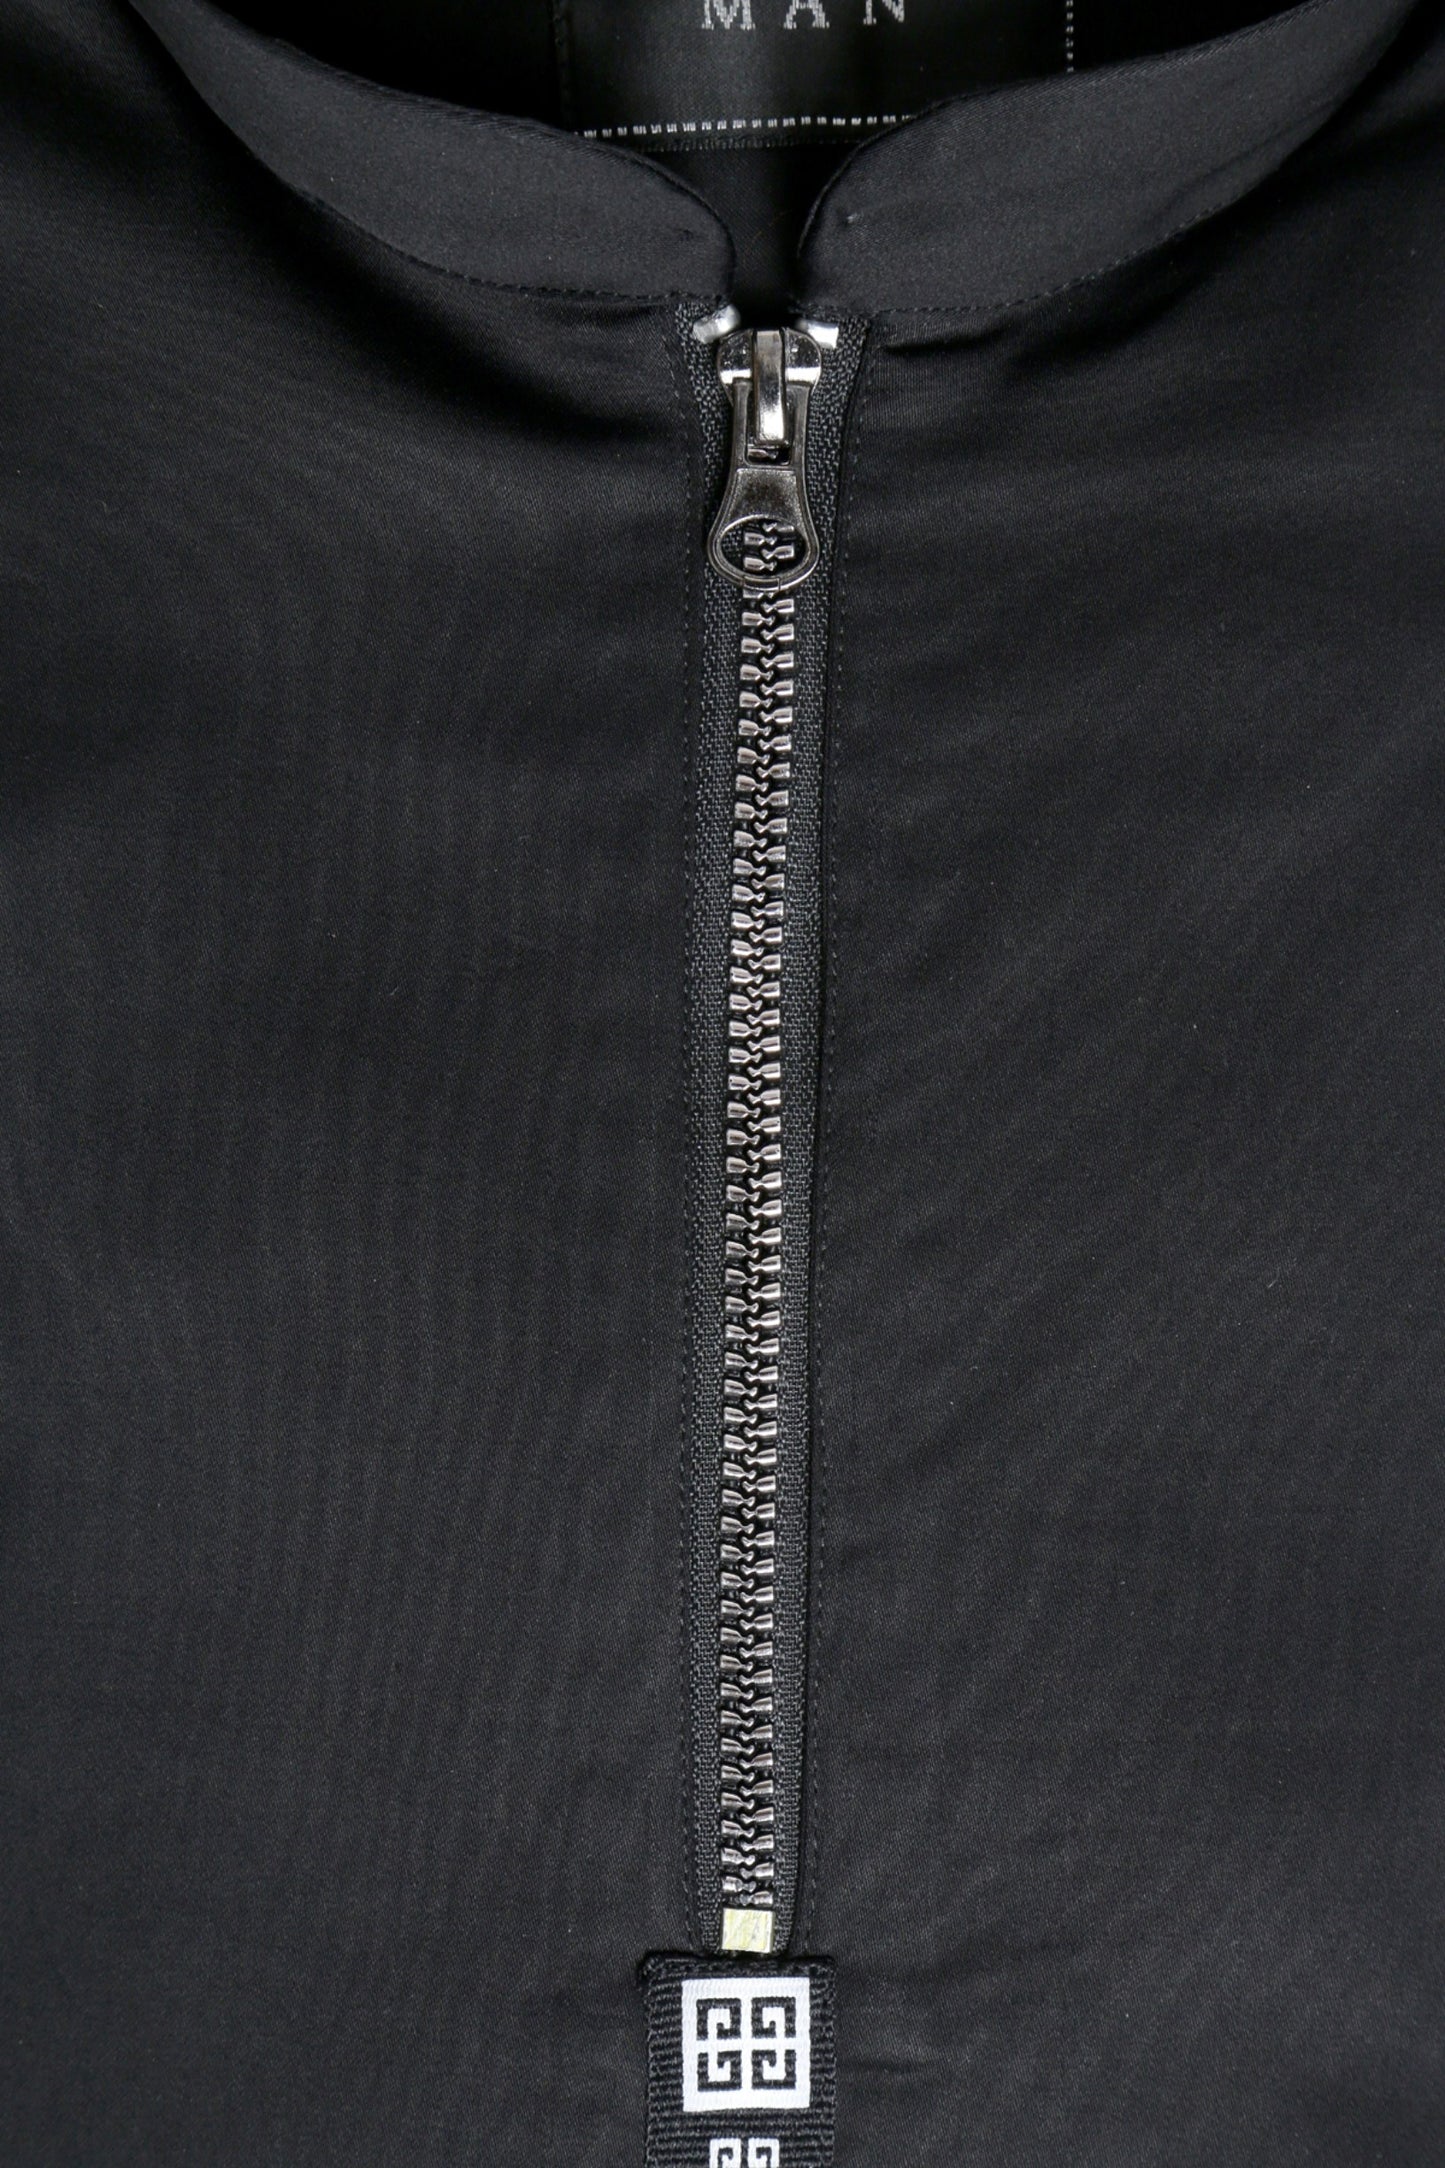 Black Zipper shirt